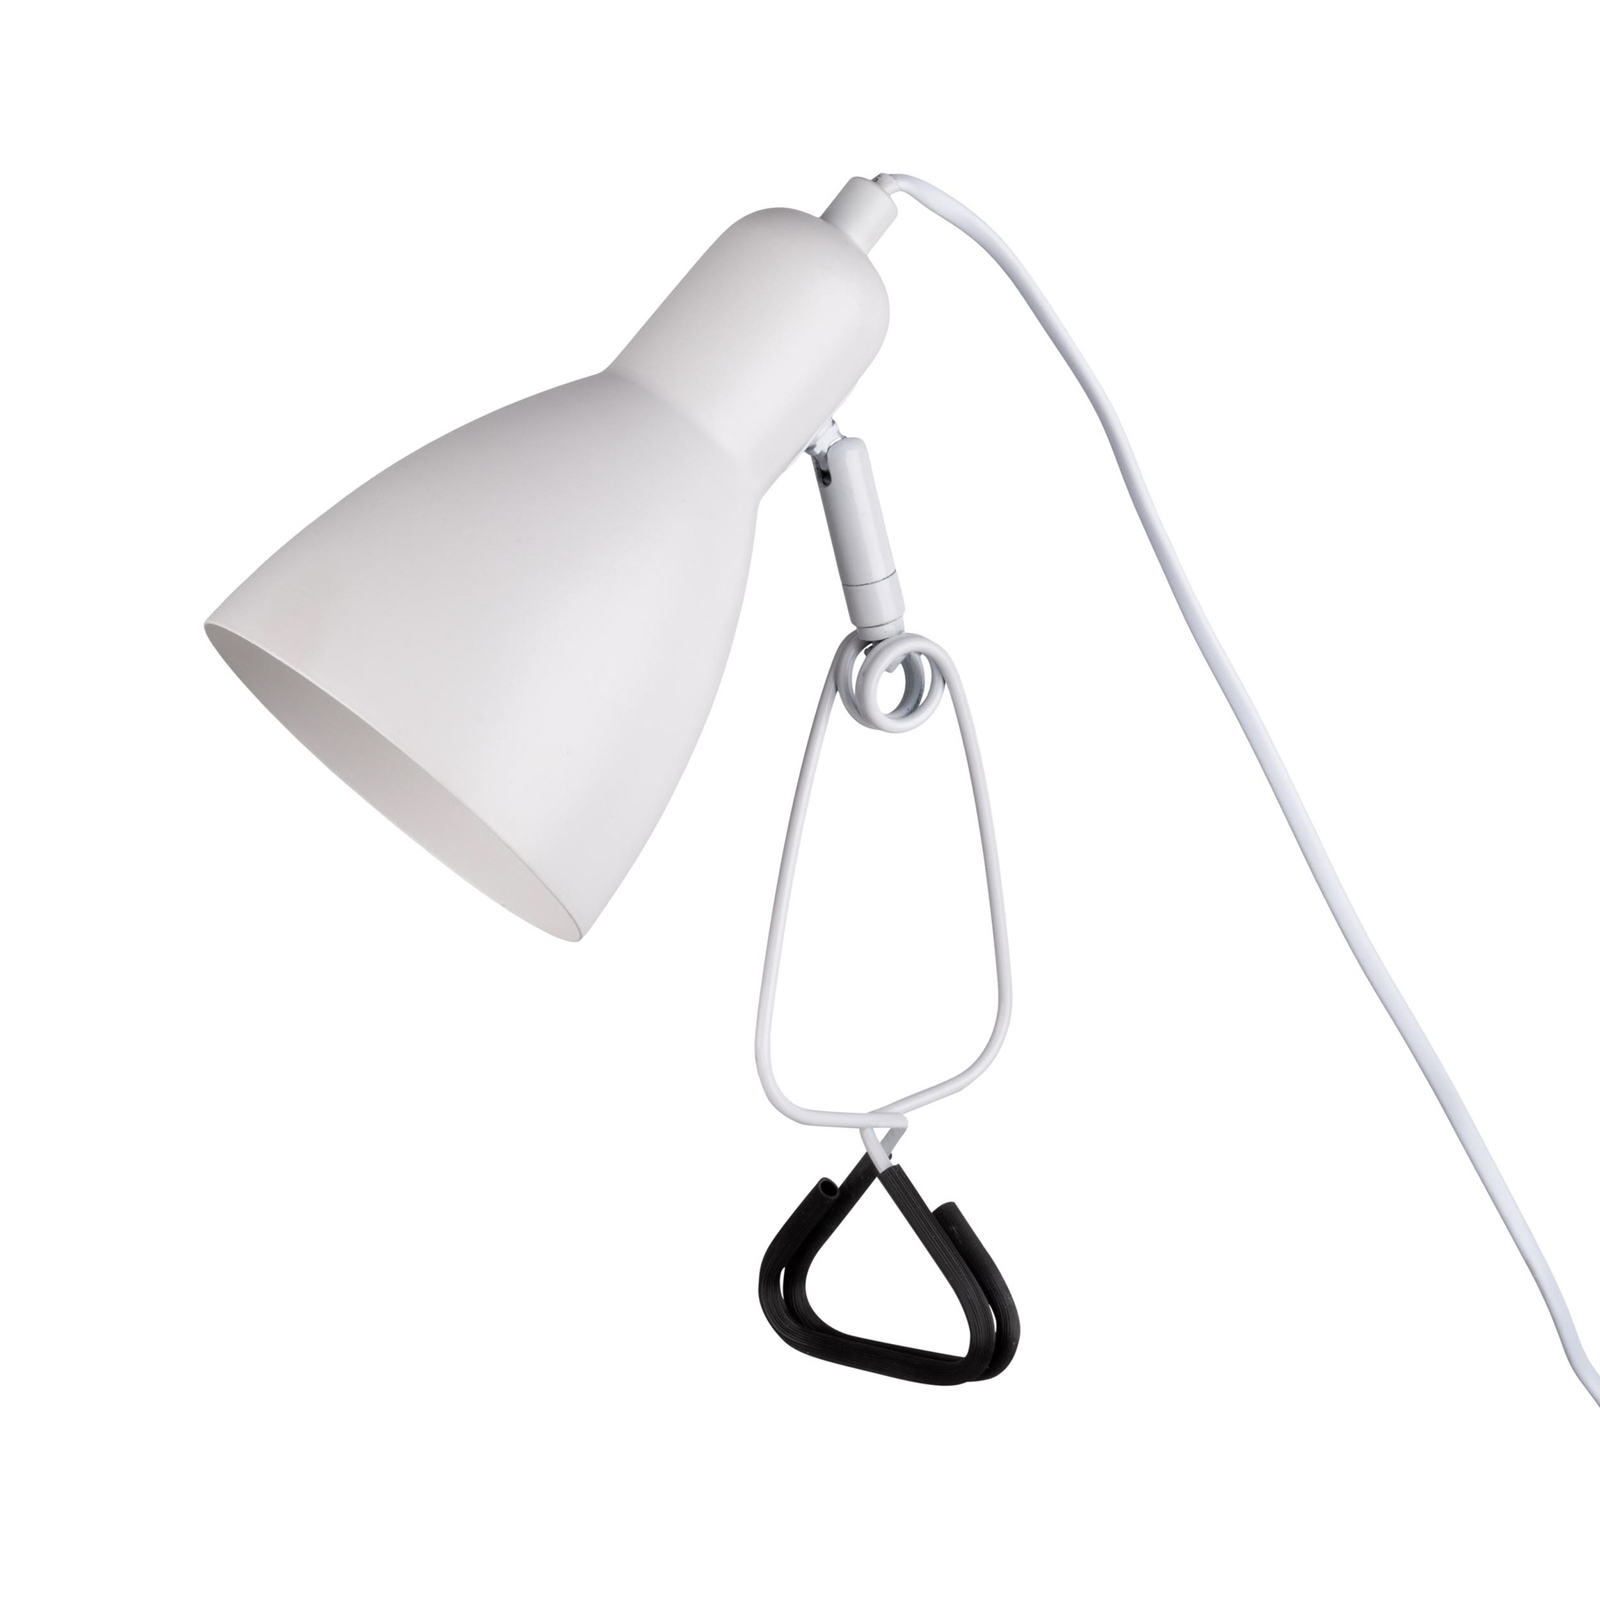 Lampa z klipsem Mara kabel z wtyczką, biała